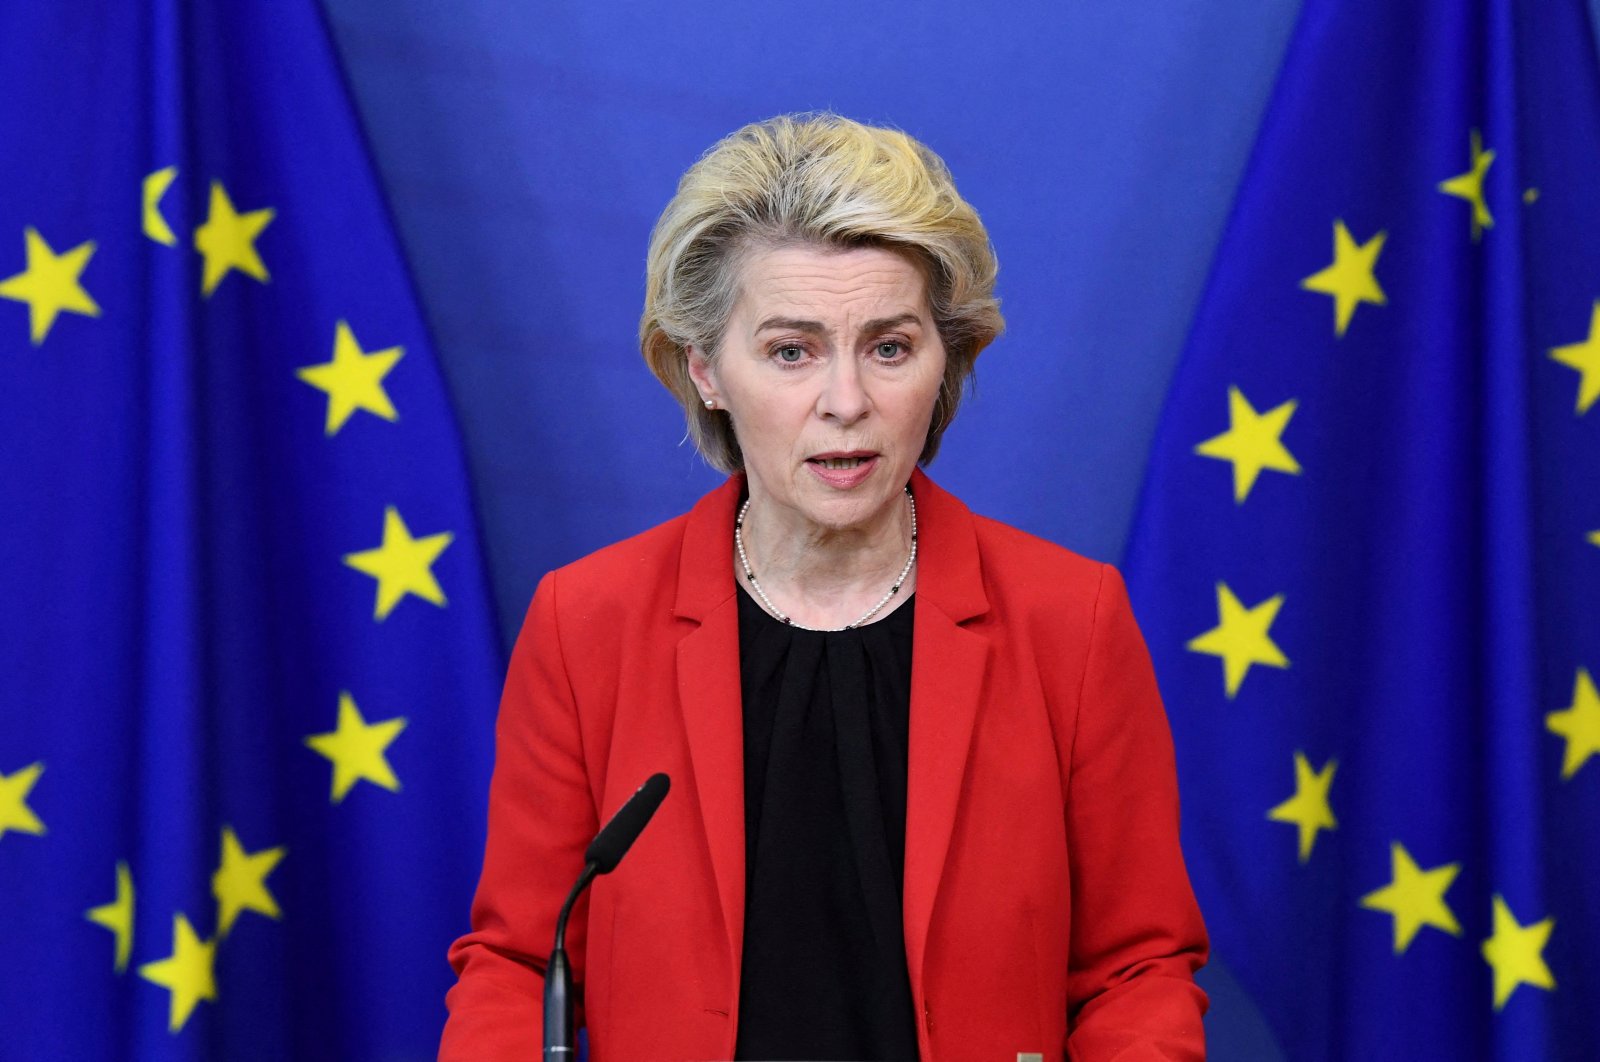 European Commission President Ursula von der Leyen gives a statement on Ukraine at the EU headquarters in Brussels, Belgium, Jan. 24, 2022. (Reuters Photo)